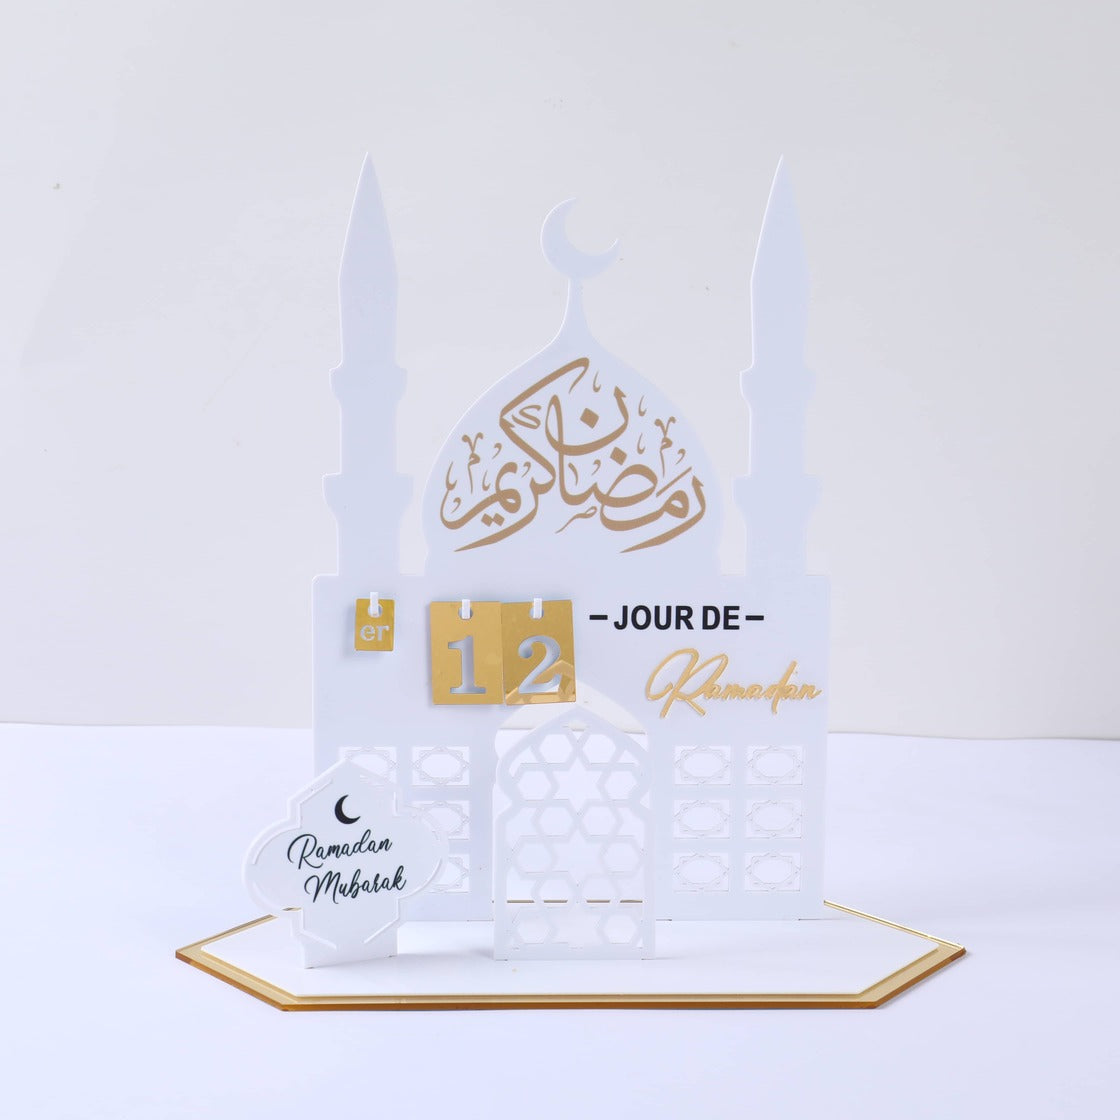 Calendrier / Counter horaire du Ramadan en Acrylique Blanc et Doré